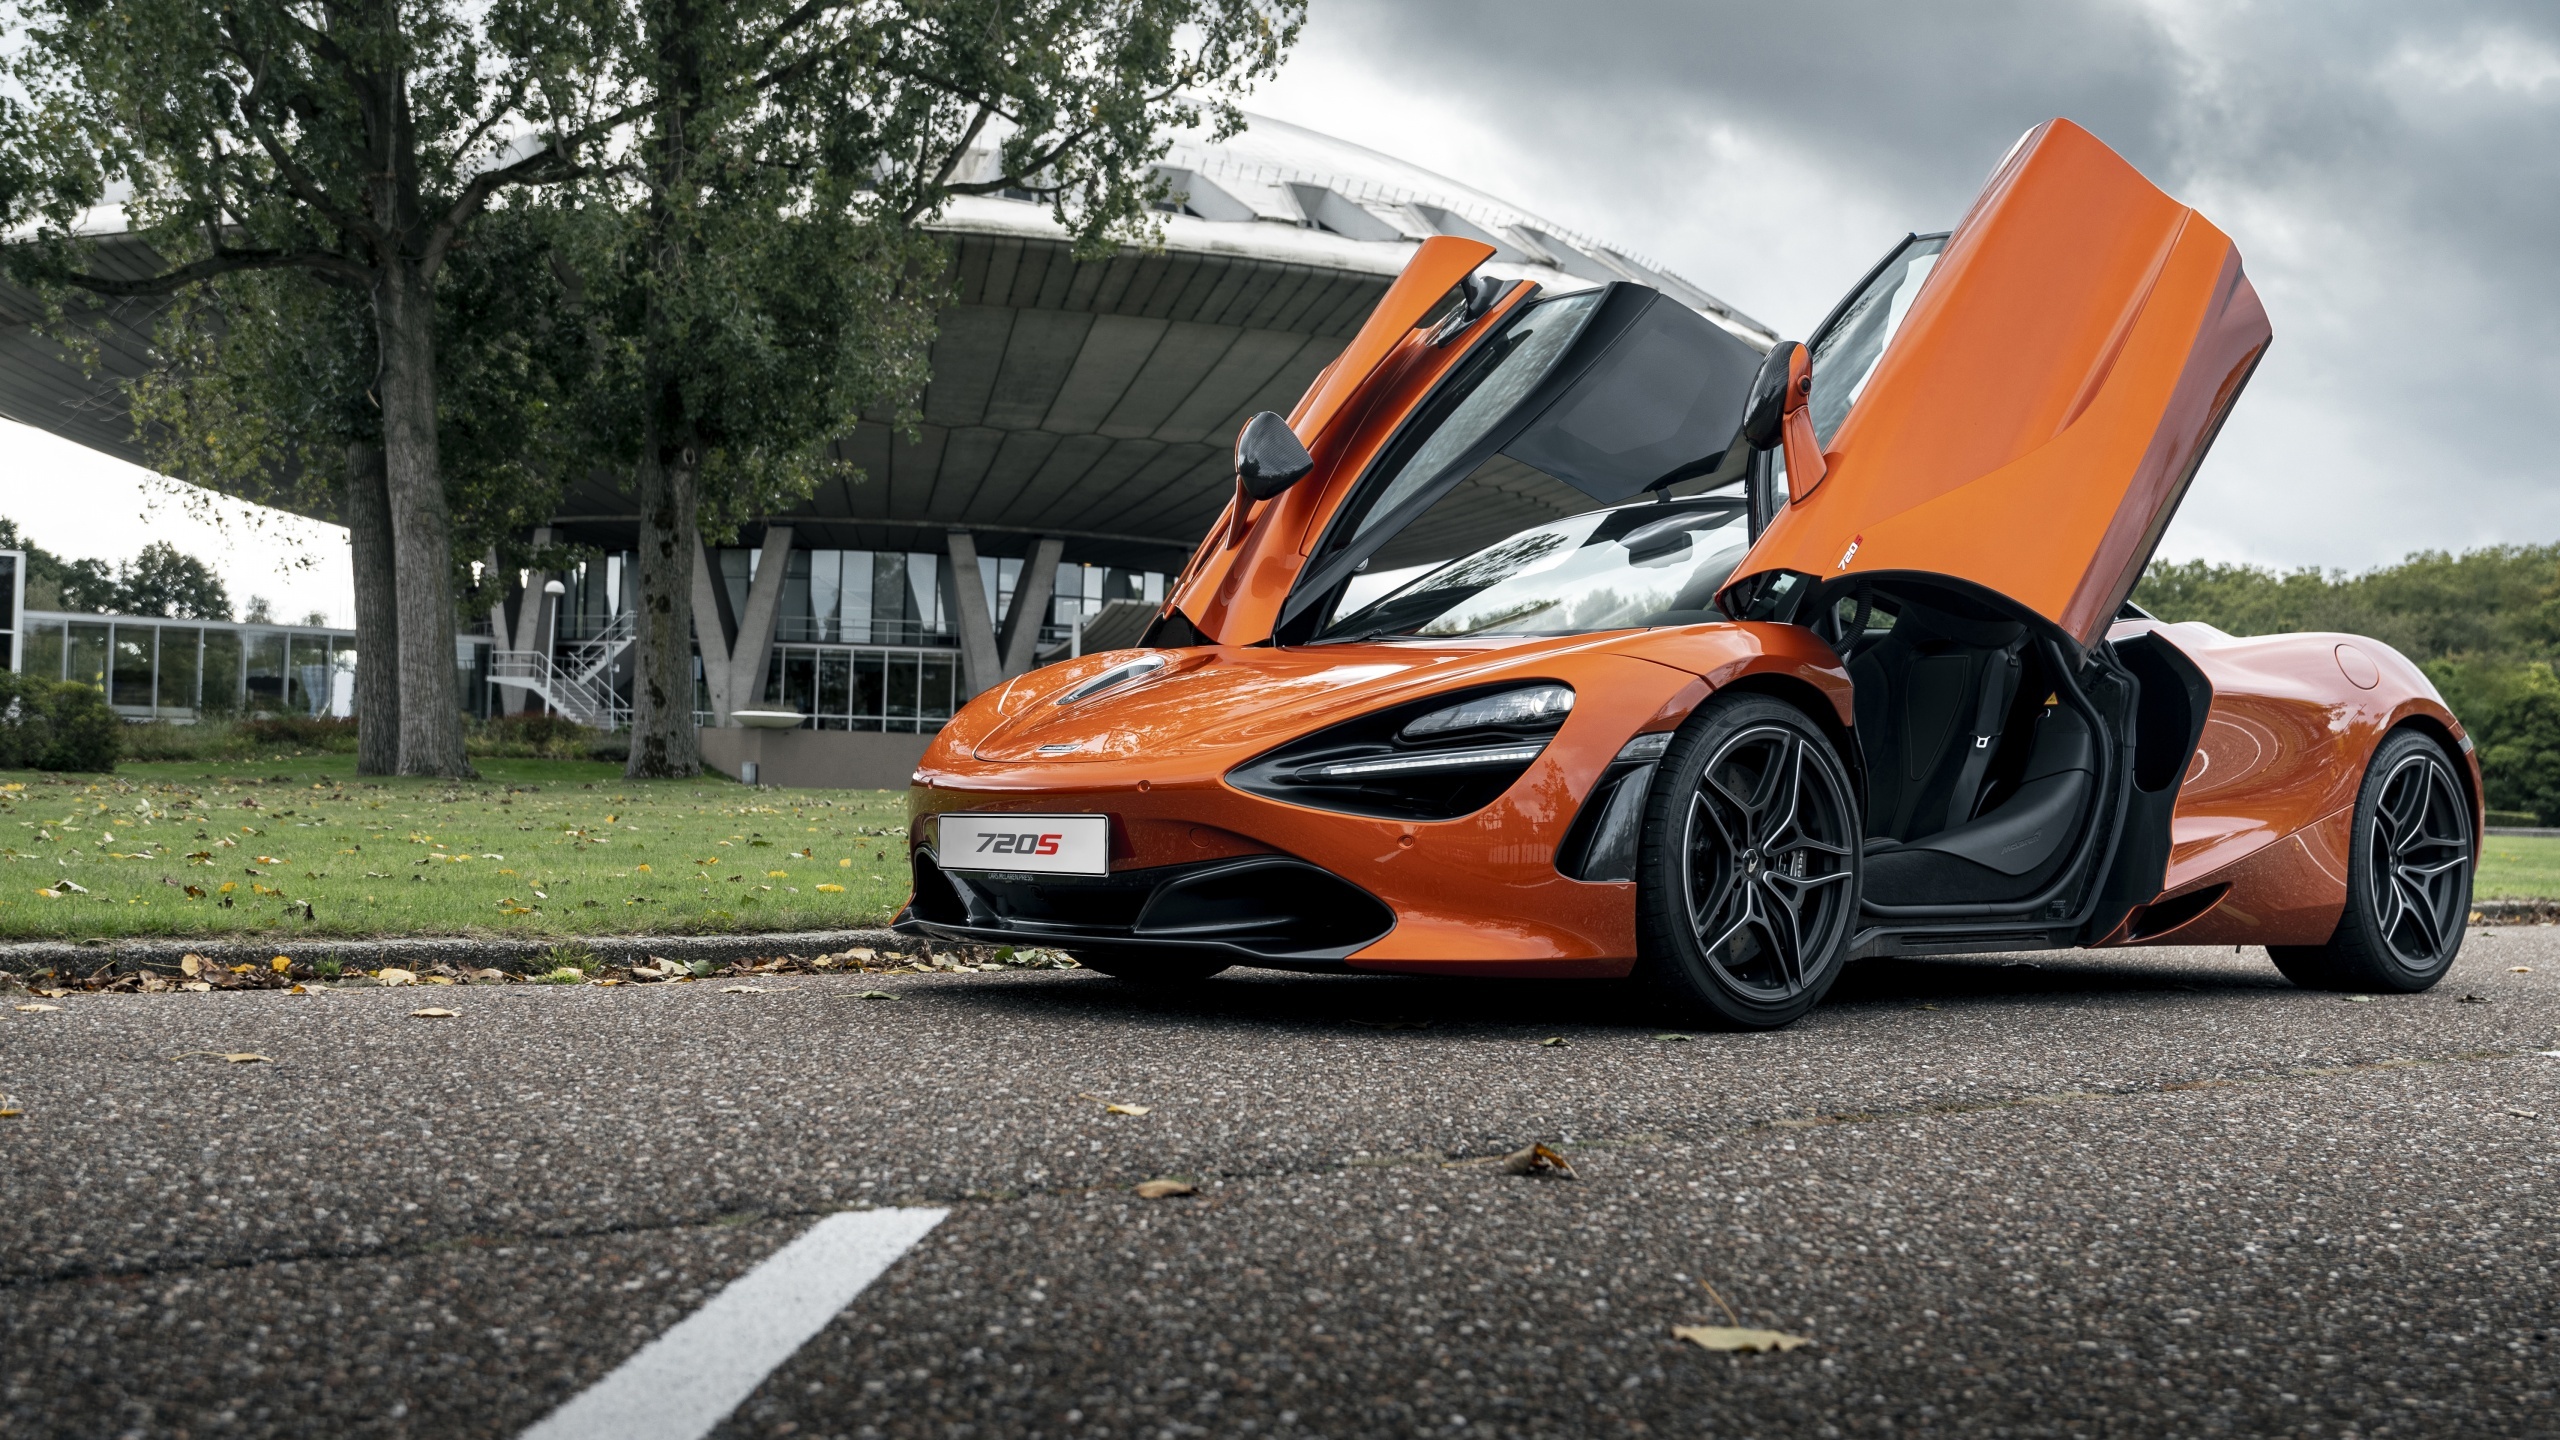 McLaren 720S, High-resolution wallpaper, 2021 sports cars, Stunning visuals, 2560x1440 HD Desktop